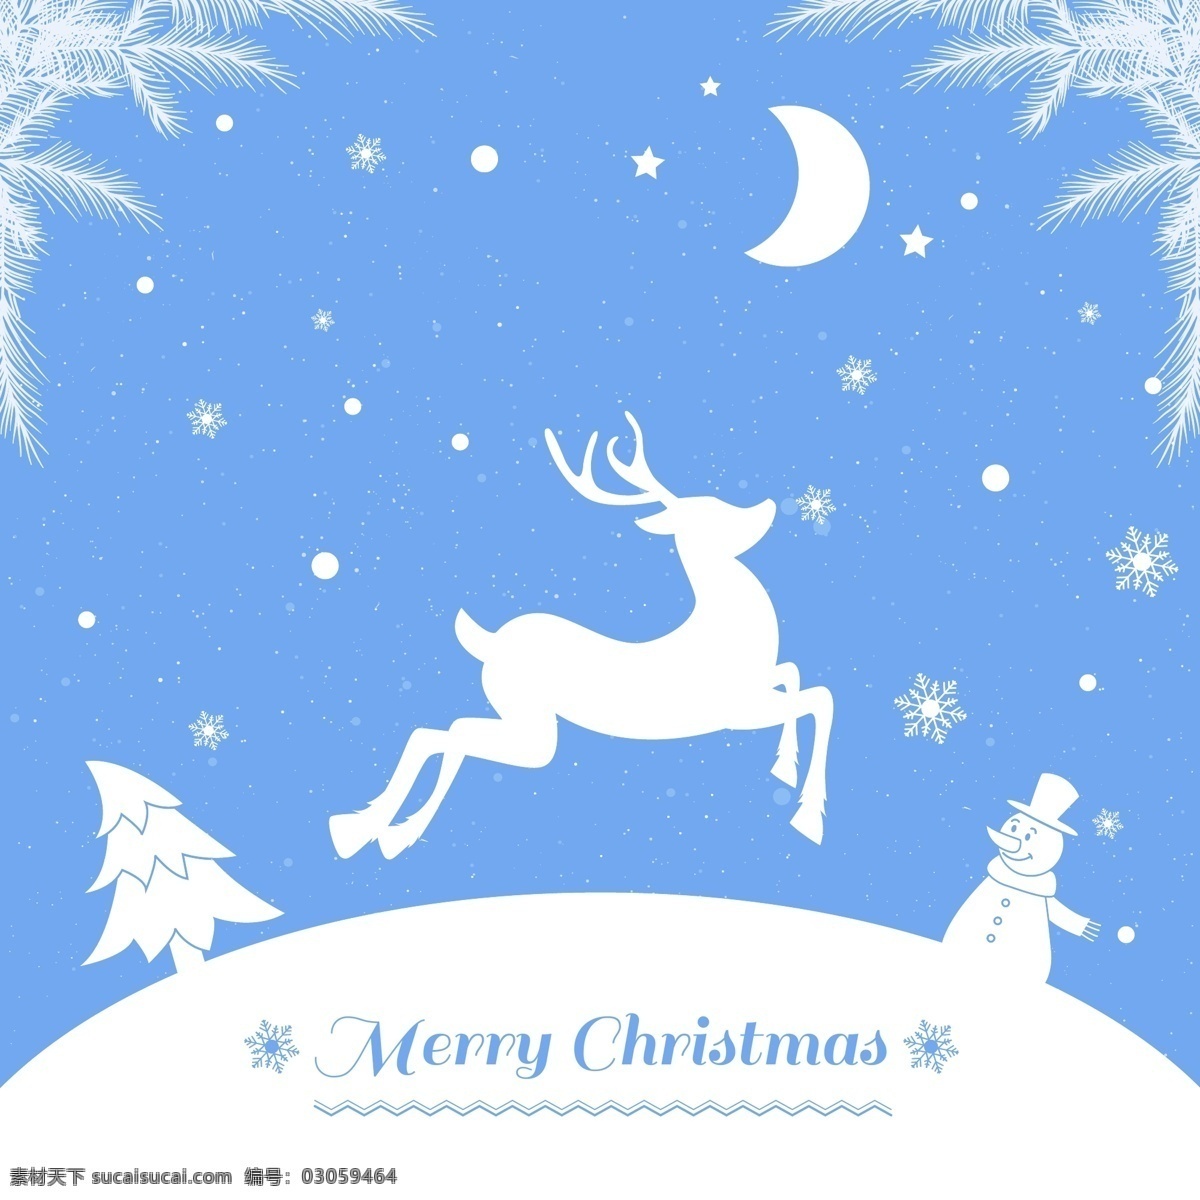 白色 驯鹿 圣诞 背景 圣诞节 矢量图 松树 松枝 雪花 雪人 夜晚 月亮 雪原 节日素材